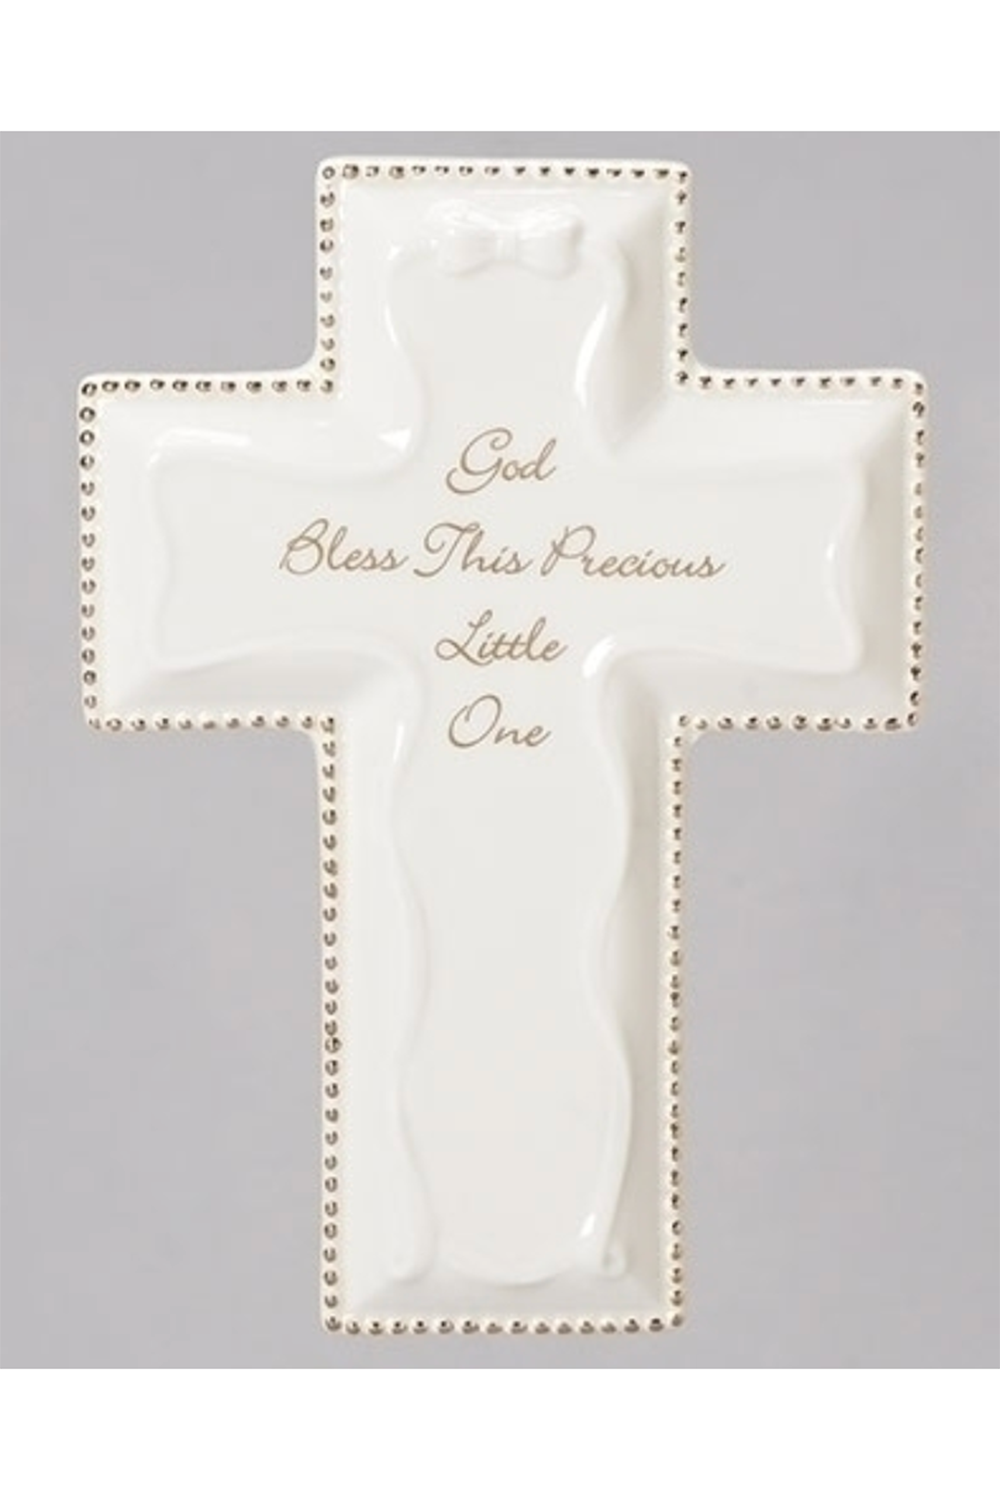 RM God Bless Wall Cross - White